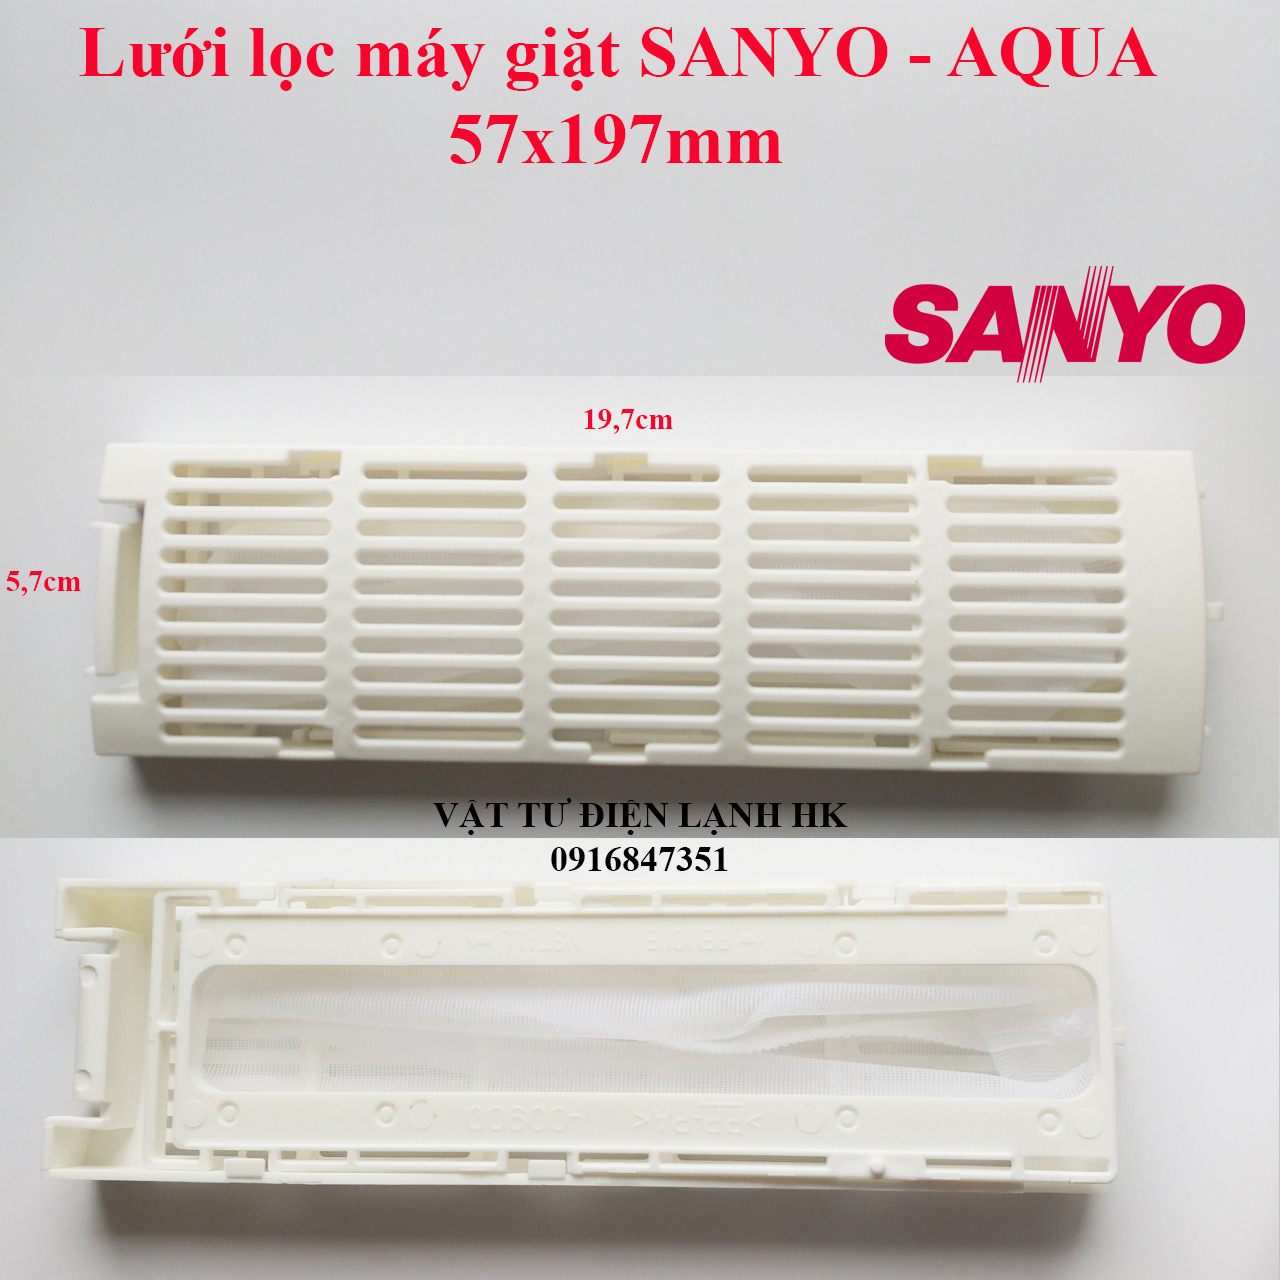 Túi lọc rác dùng cho máy giặt Sanyo 57x197mm lưới lọc sơ vải mg Sanyơ